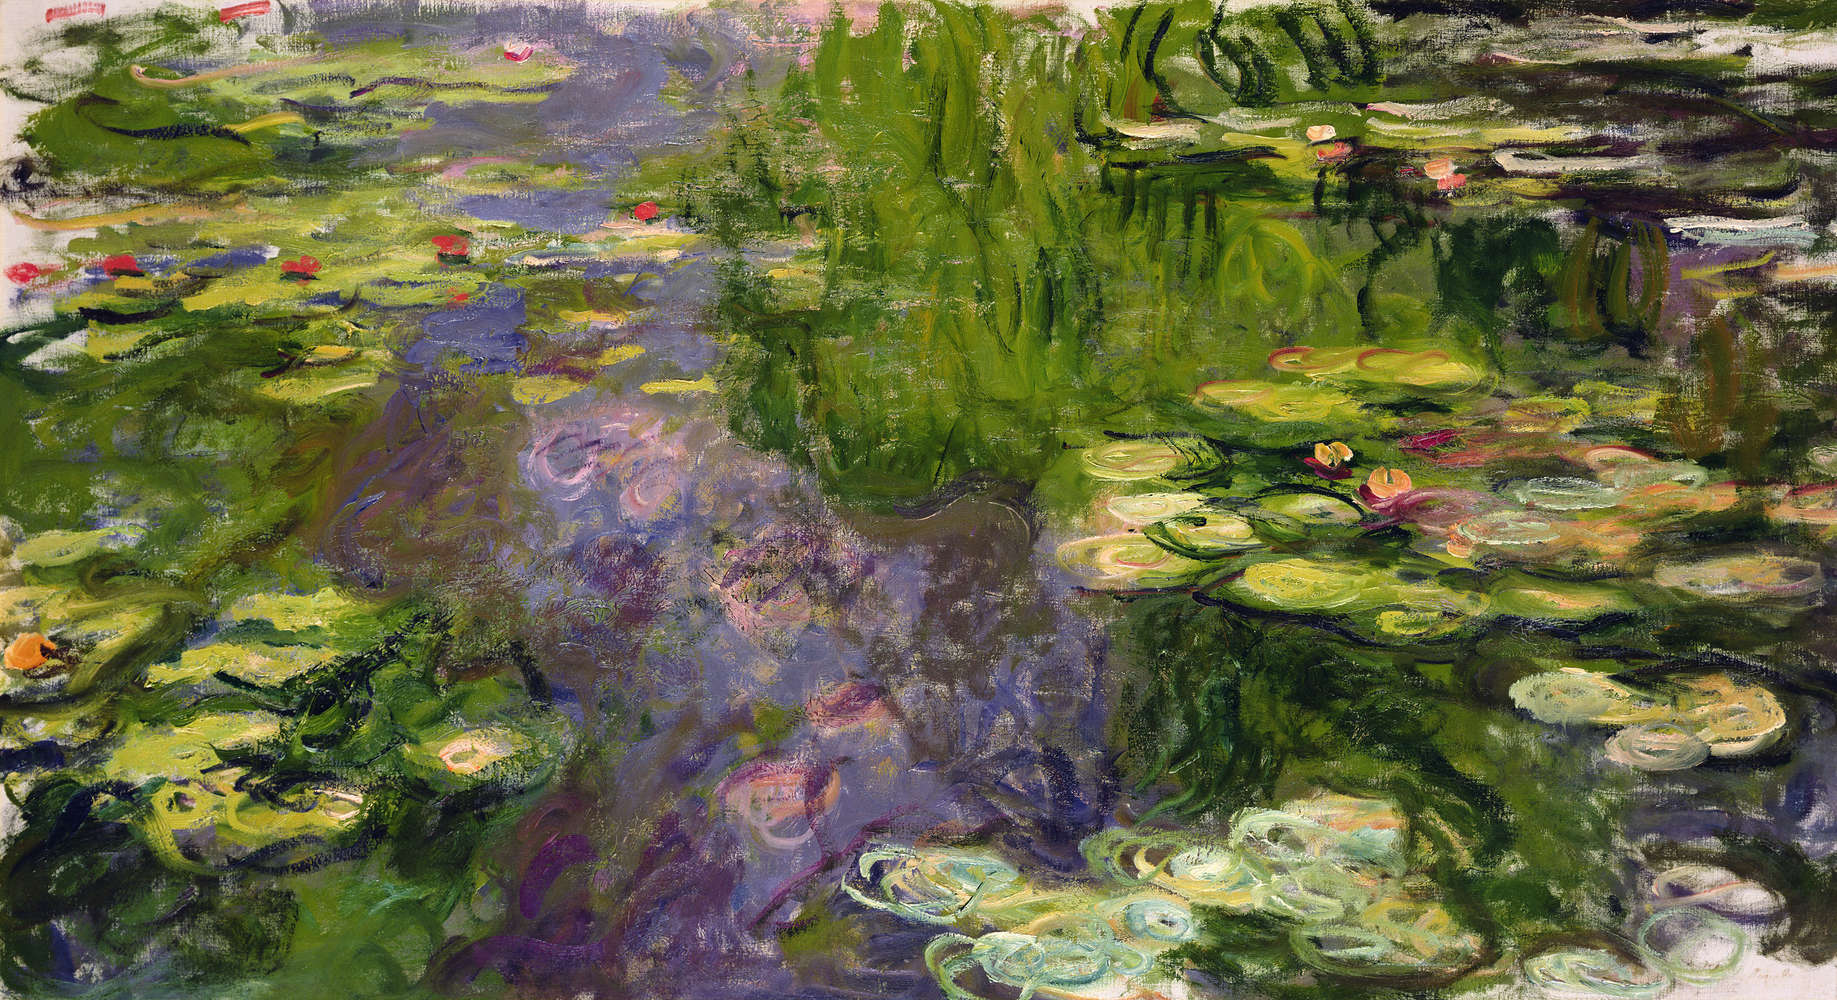             Mural "Nenúfares" de Claude Monet
        